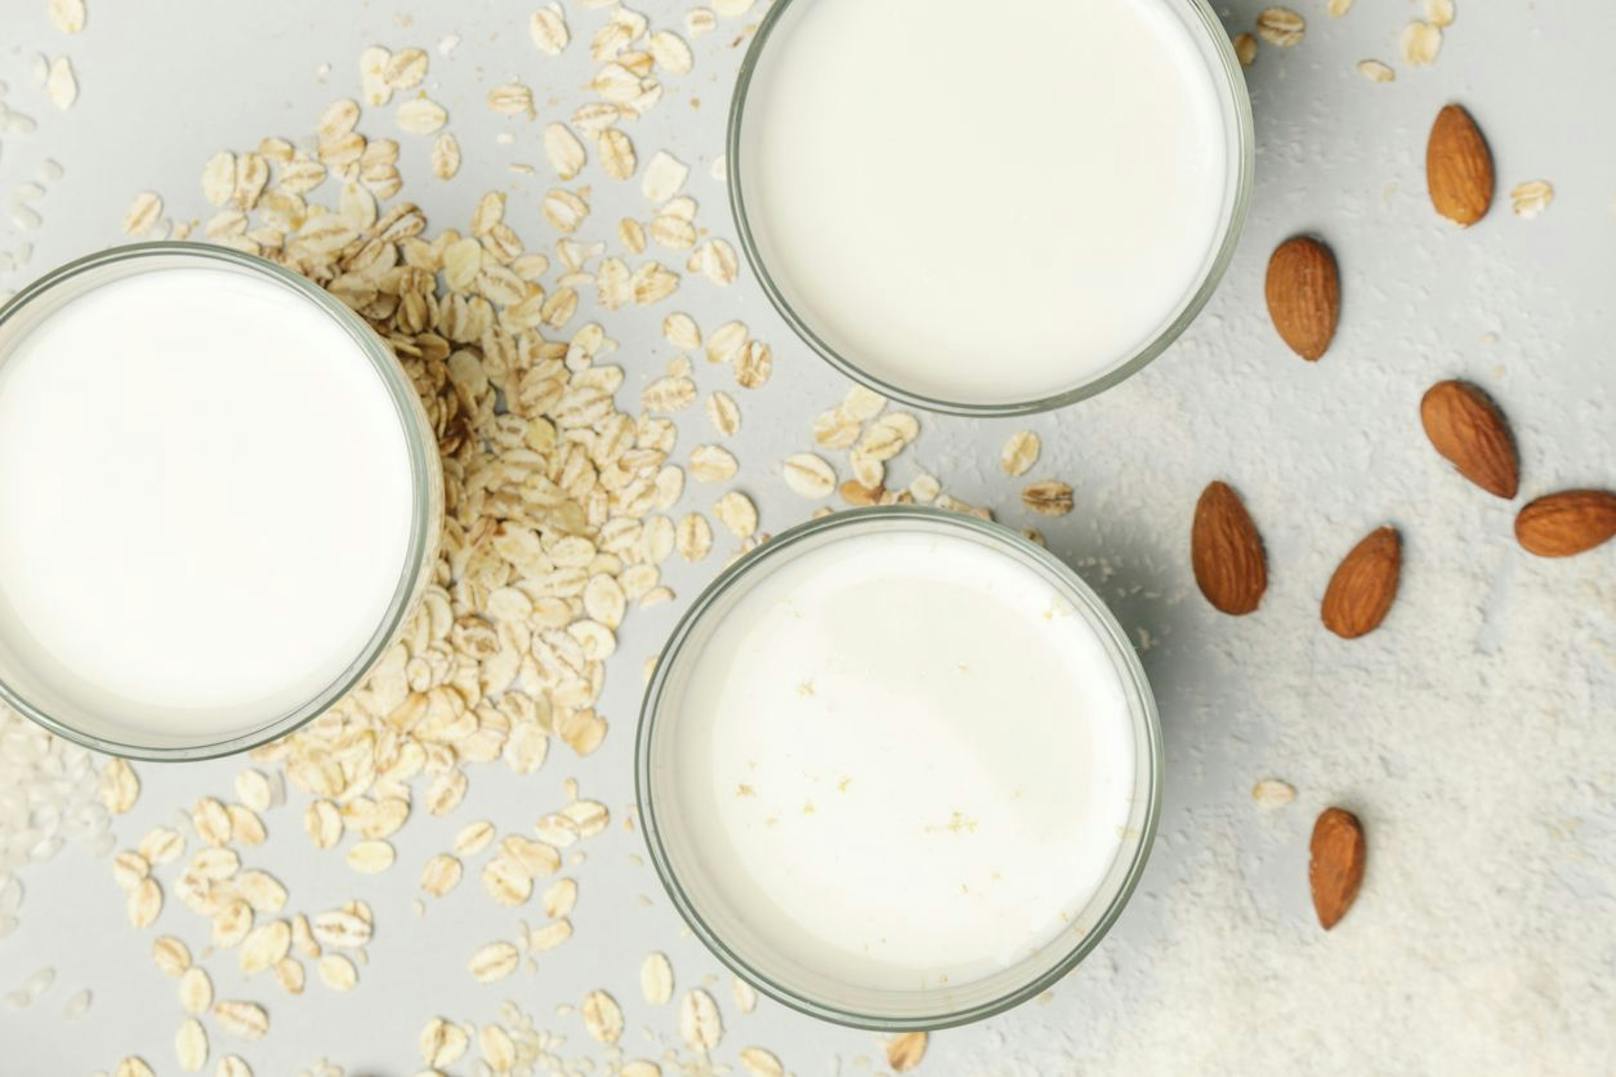 Milchprodukte können durch viele alternative Lebensmittel ersetzt werden. Für die Anwendung kommen Sahne oder auch Crème fraîche in Frage. Anderenfalls kann man auch vegane Optionen nutzen wie Soja-, Hafer-, Mandel-, oder Reismilch.